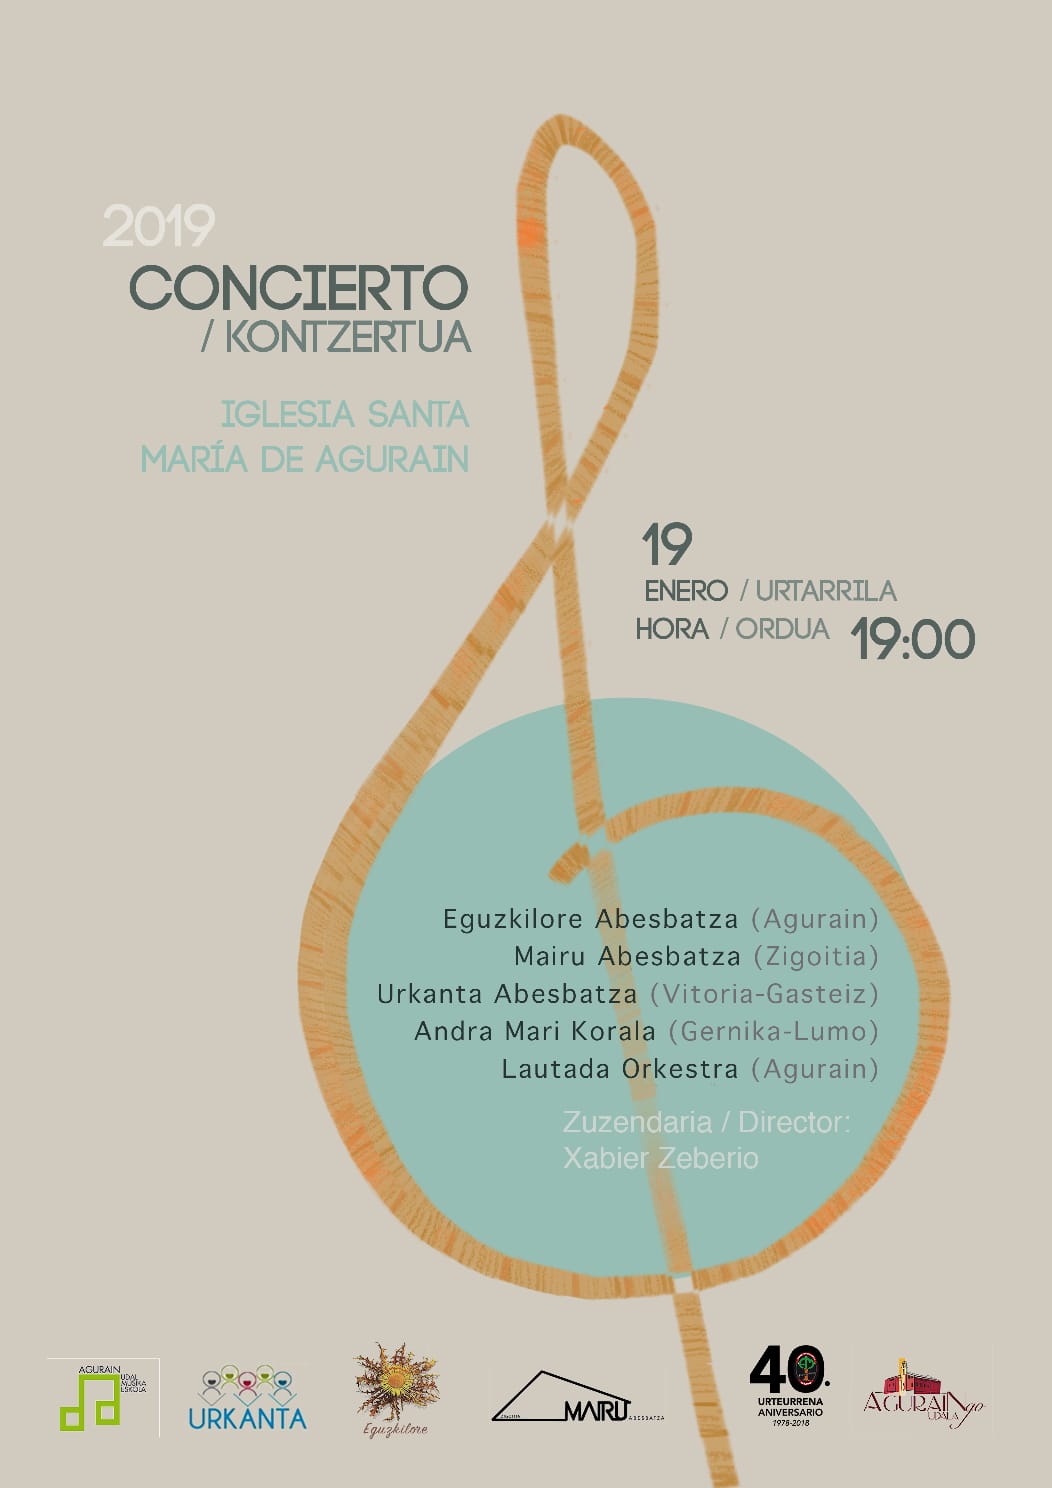 Próximo concierto que se ofrecerá en Agurain el próximo sábado19 de ENERO de 2019 a las 19 horas en la IGLESIA SANTA MARÍA DE AGURAIN., en el que participarán los coros ANDRA MARI de GERNIKA, URKANTA de VITORIA-GASTEIZ, EGUZKILORE de AGURAIN Y MAIRU ABESBATZA de ZIGOITIA junto con LAUTADAKO ORKESTRA de AGURAIN.